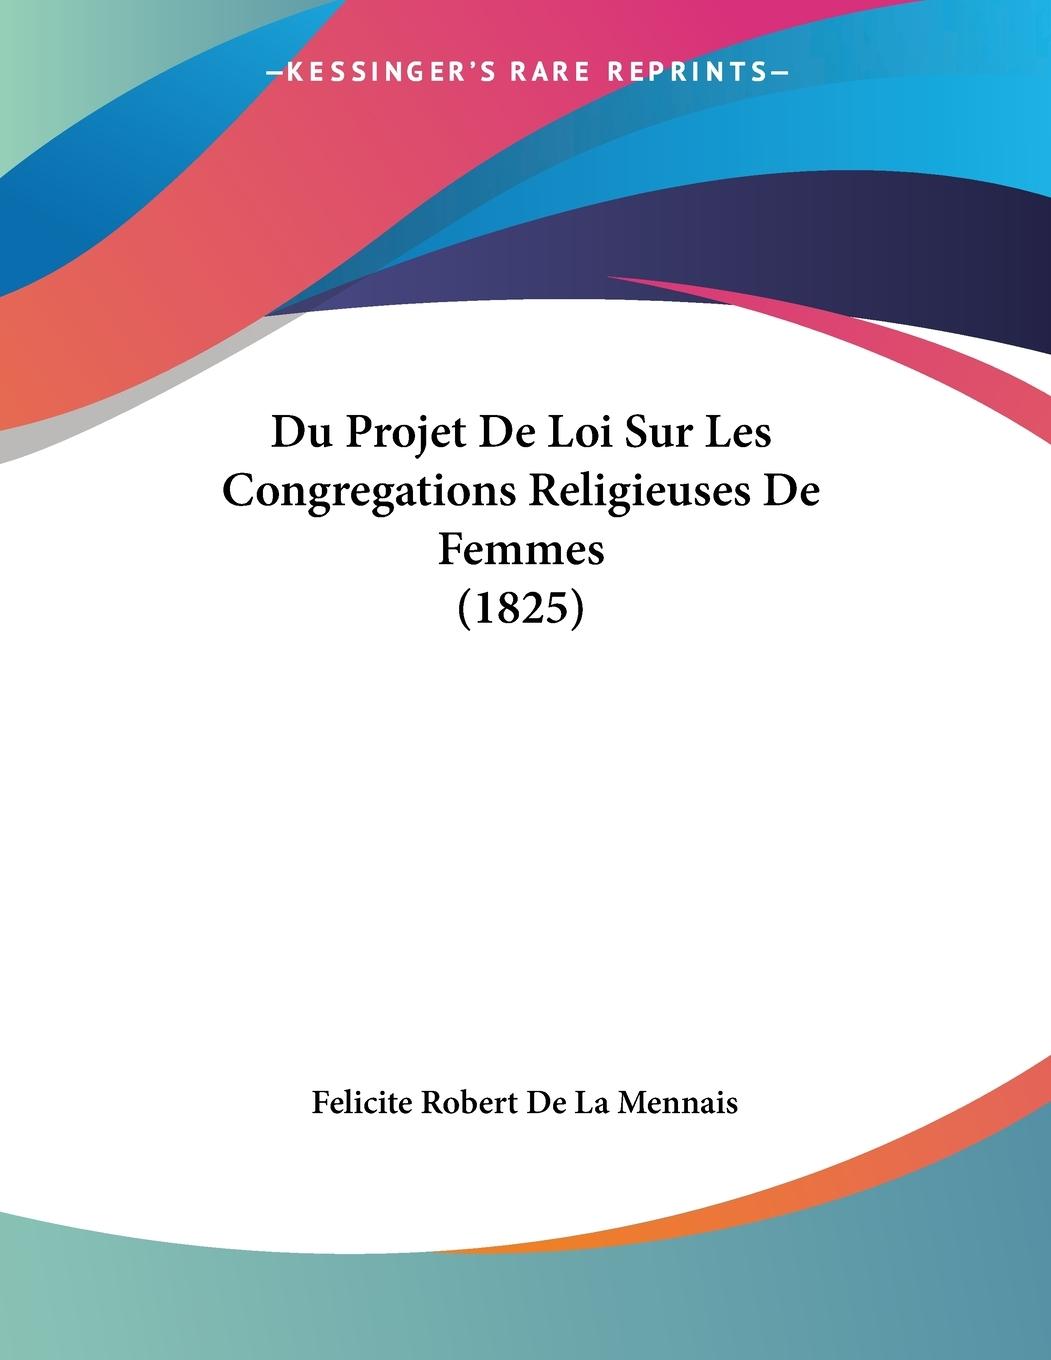 Du Projet De Loi Sur Les Congregations Religieuses De Femmes (1825) - De La Mennais, Felicite Robert